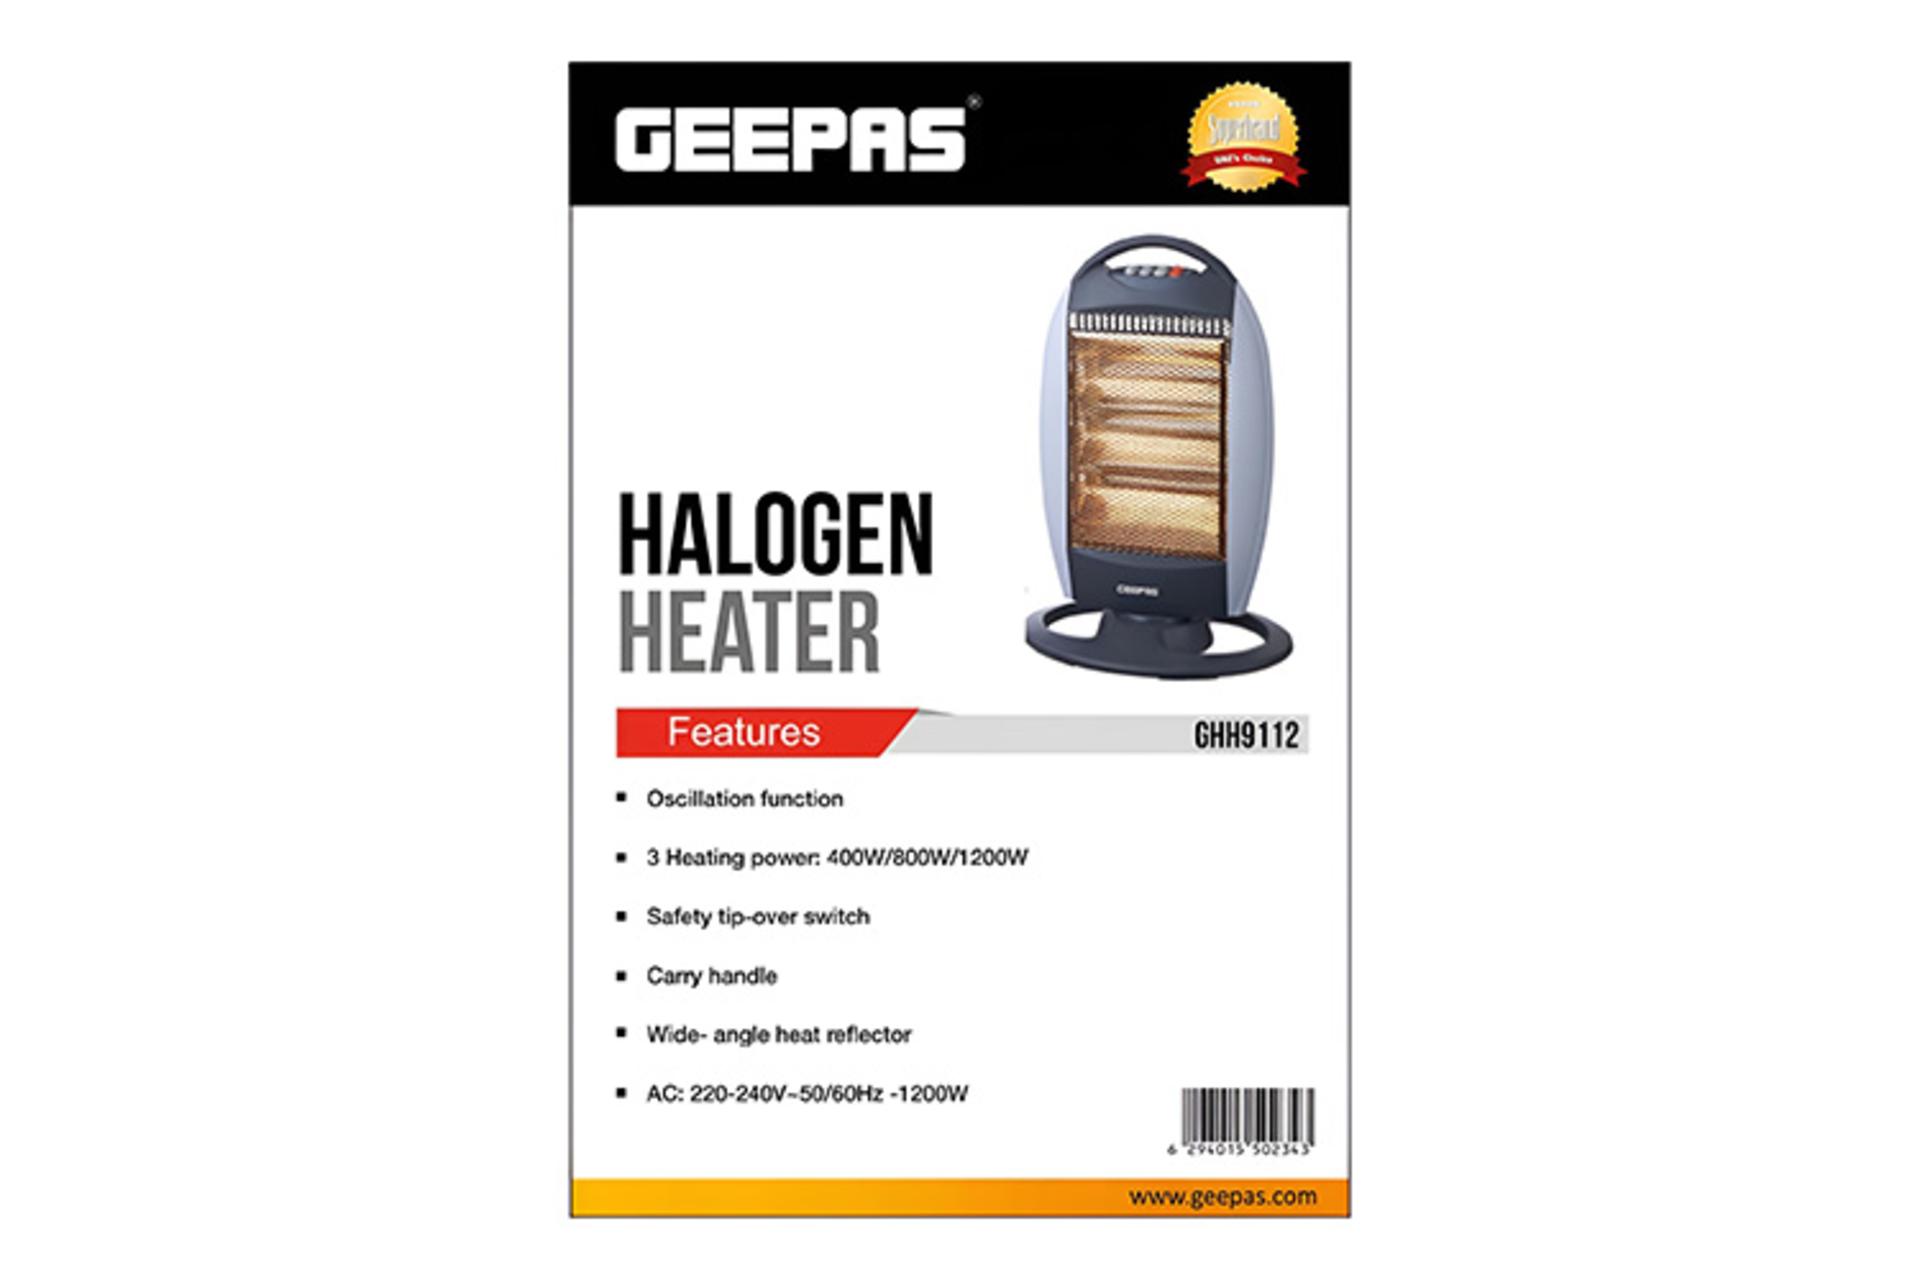 مشخصات کلی و امکانات بخاری برقی جی پاس GEEPAS GHH9112